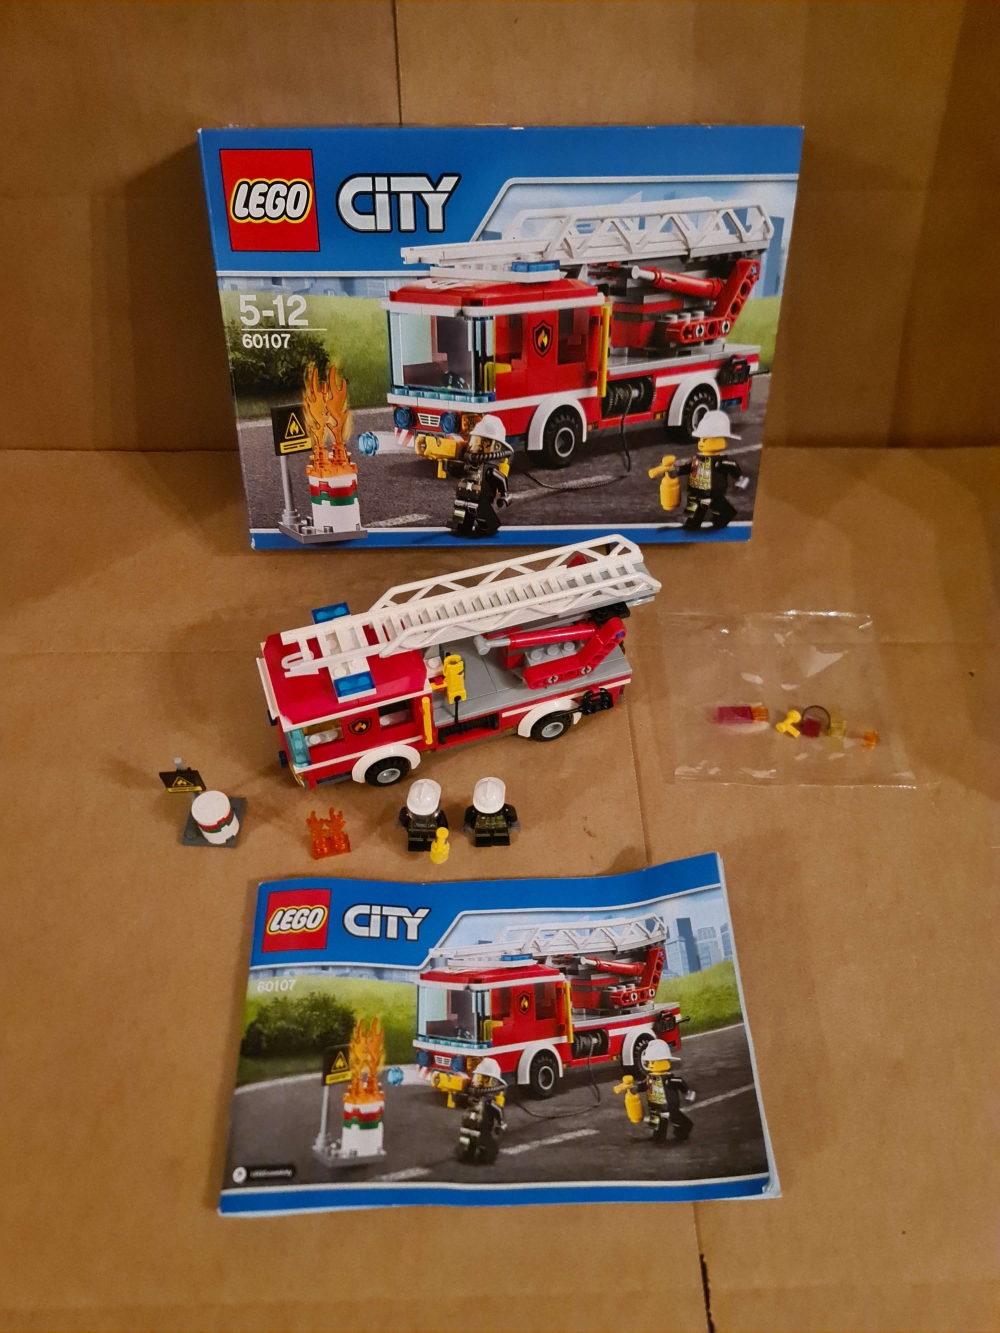 Sett 60107 fra Lego City serien.
Komplett med manual og eske.
Som nytt.